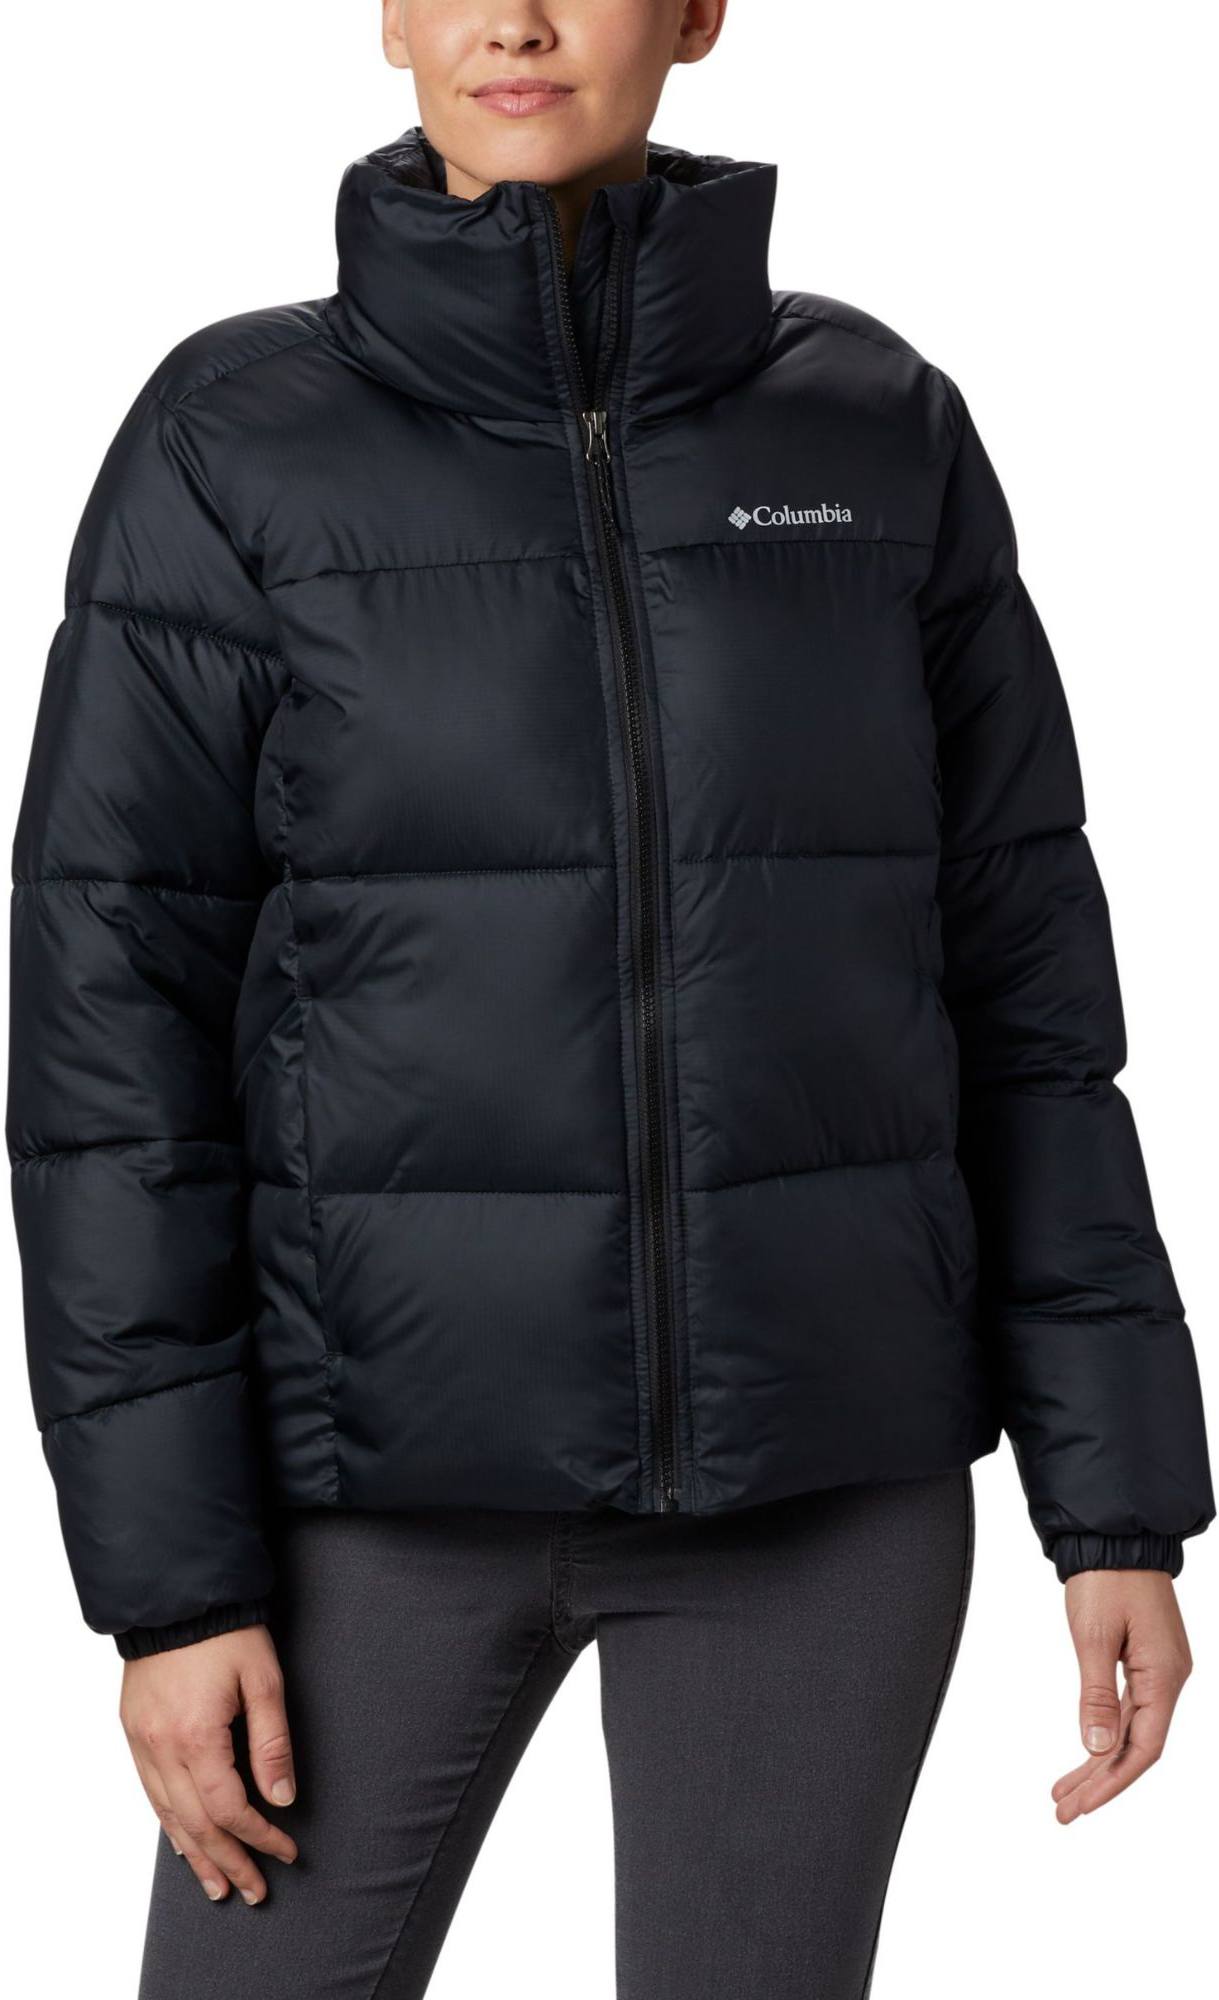 Columbia Women’s Puffert Jacket Musta XL